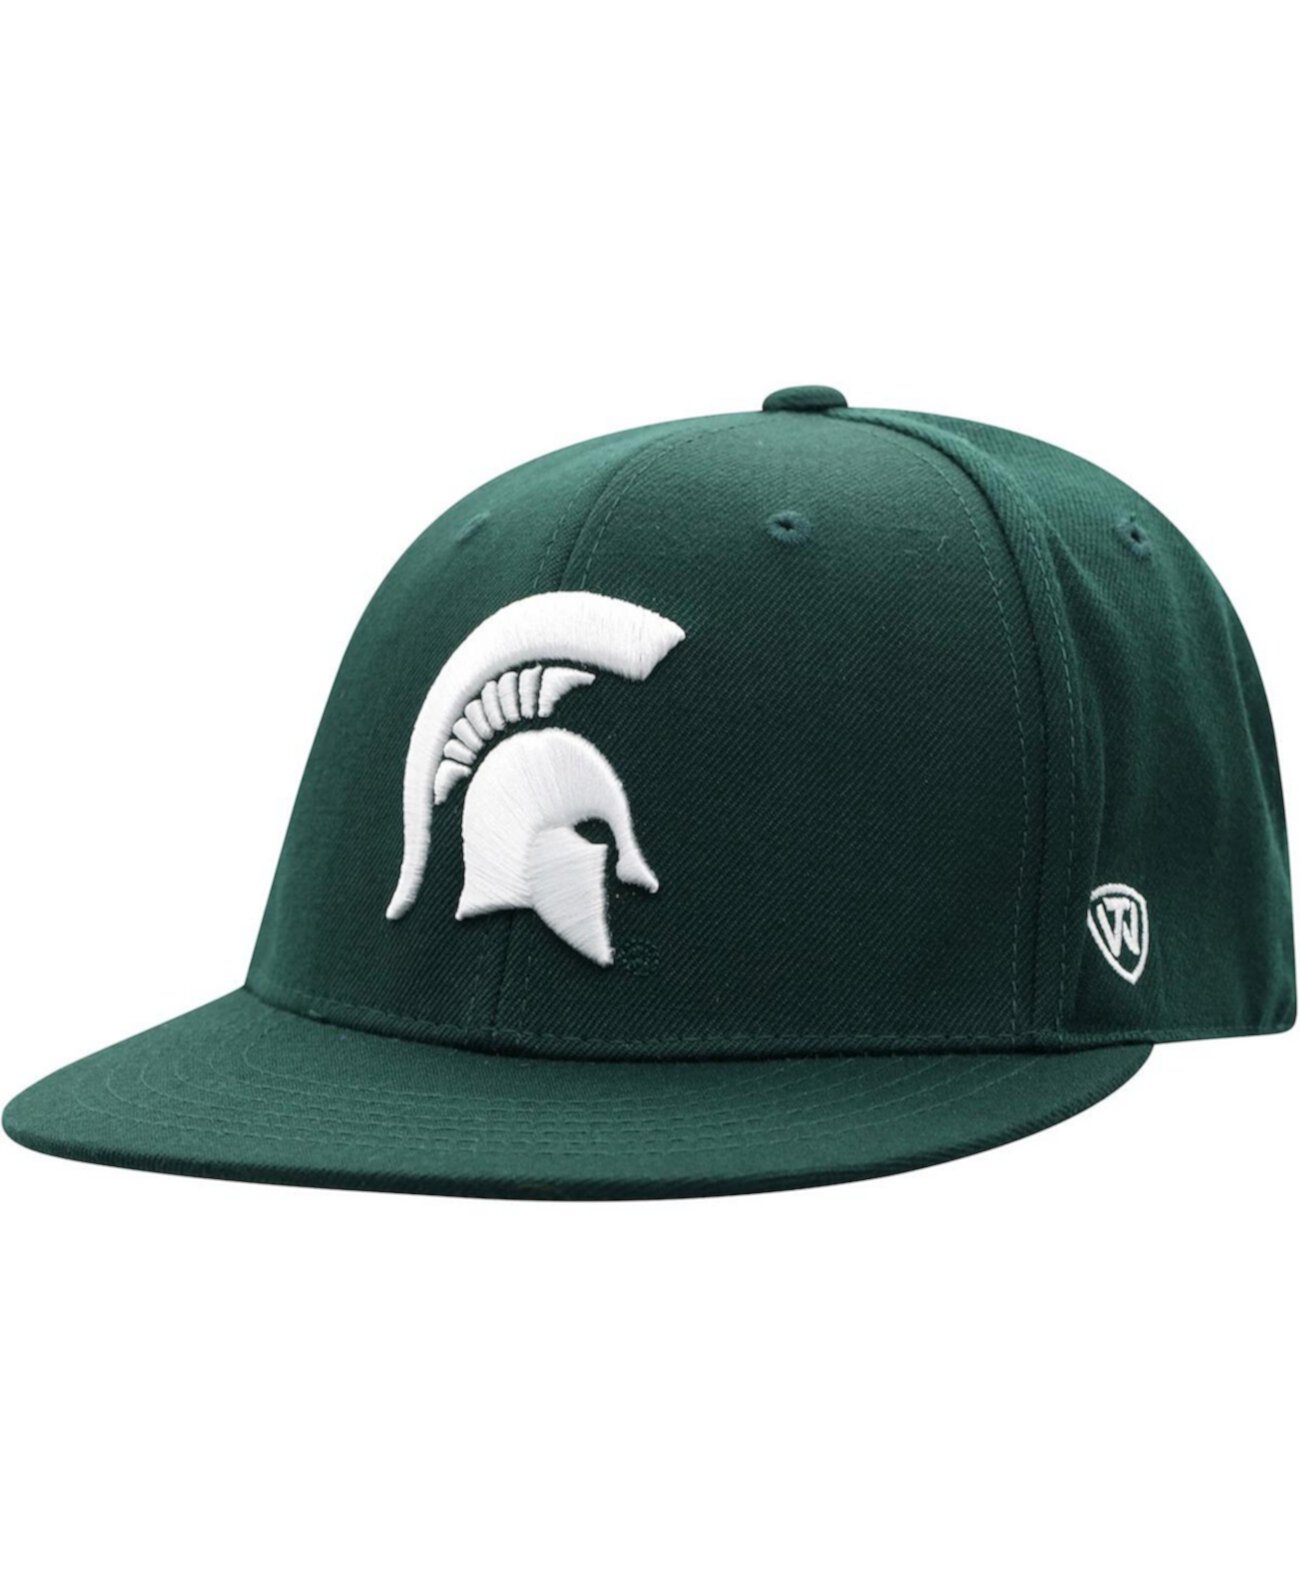 Мужская зеленая приталенная шапка цвета команды Michigan State Spartans Team Top of the World